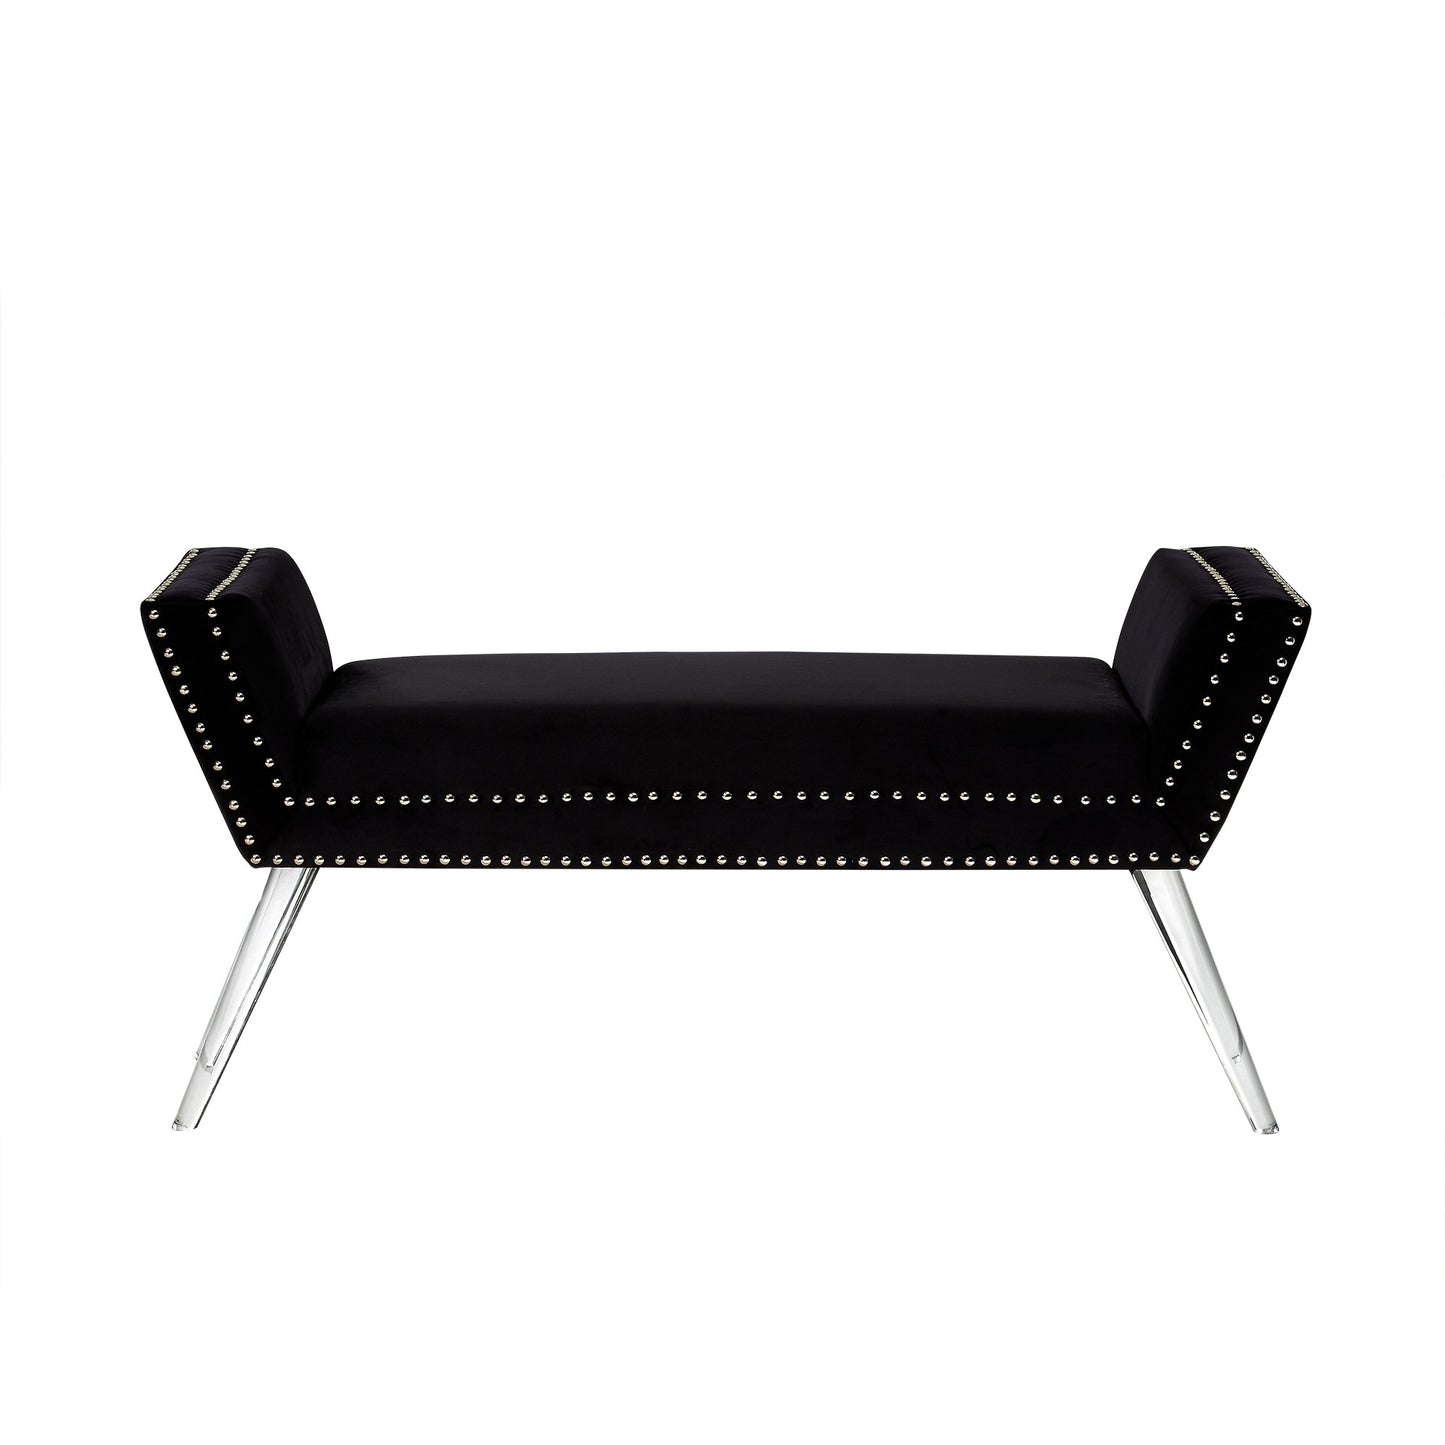 45" Black And Clear Upholstered Velvet Bench